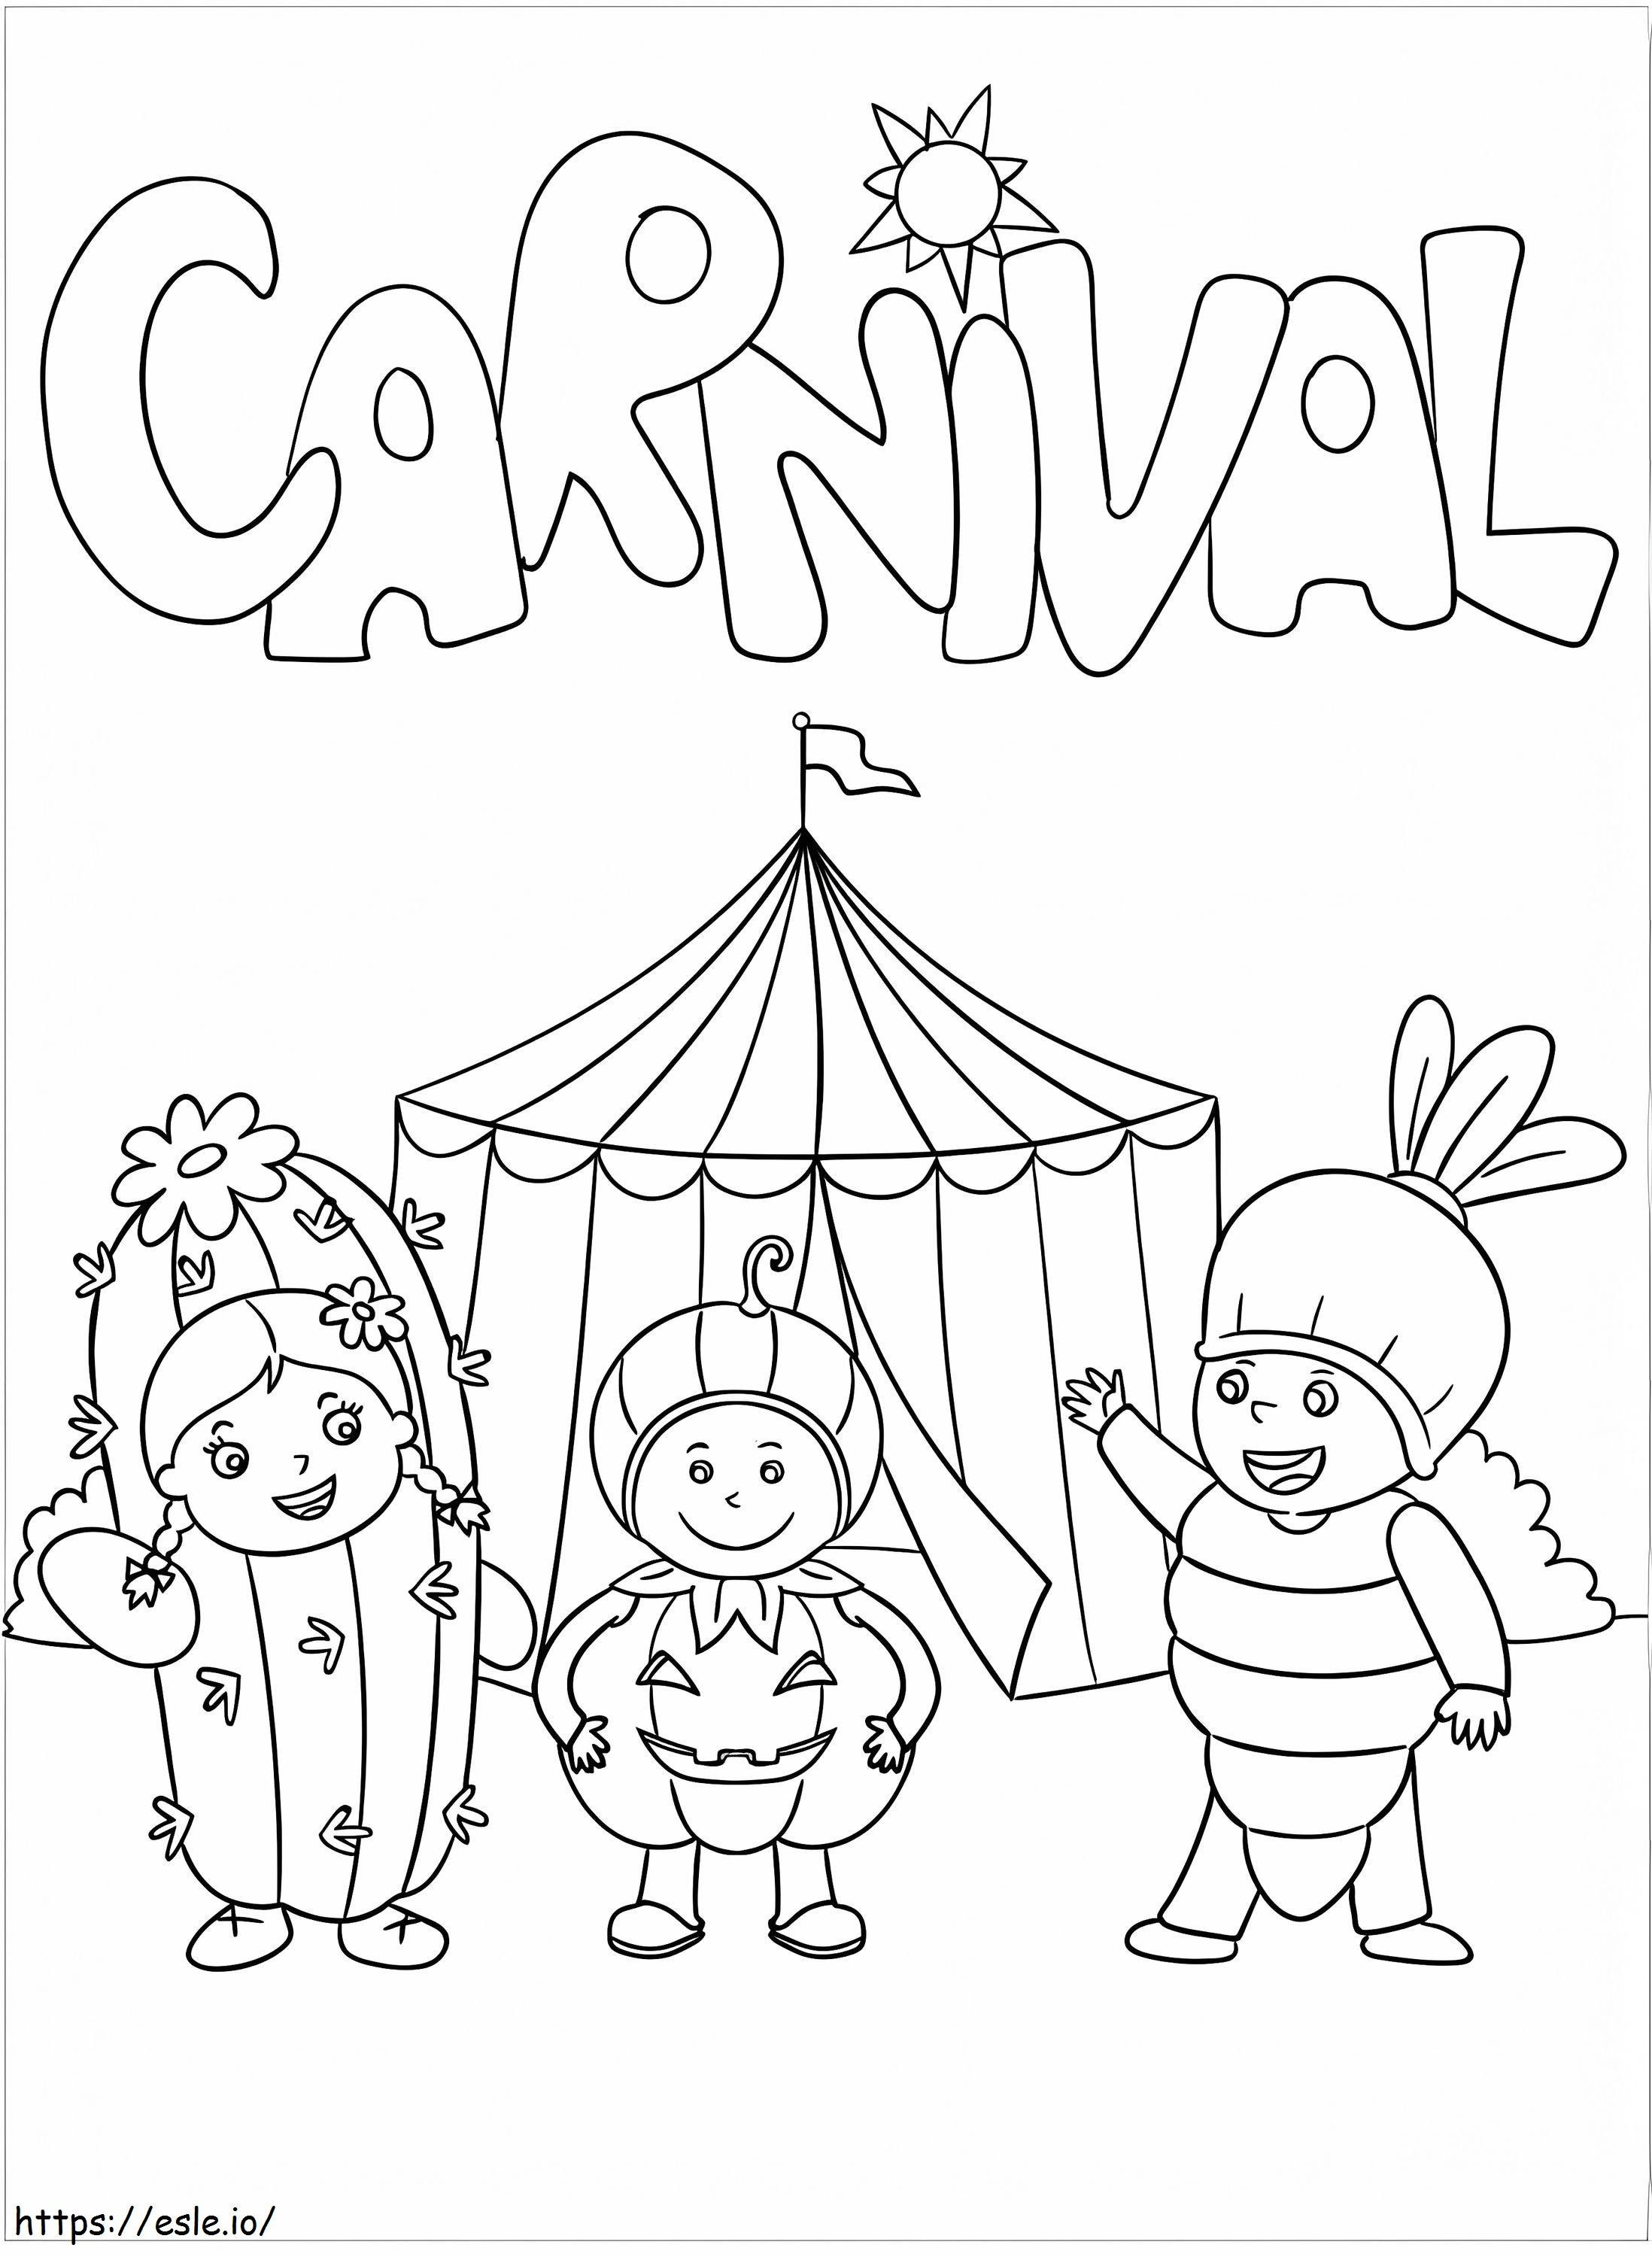 Coloriage Carnaval adorable à imprimer dessin